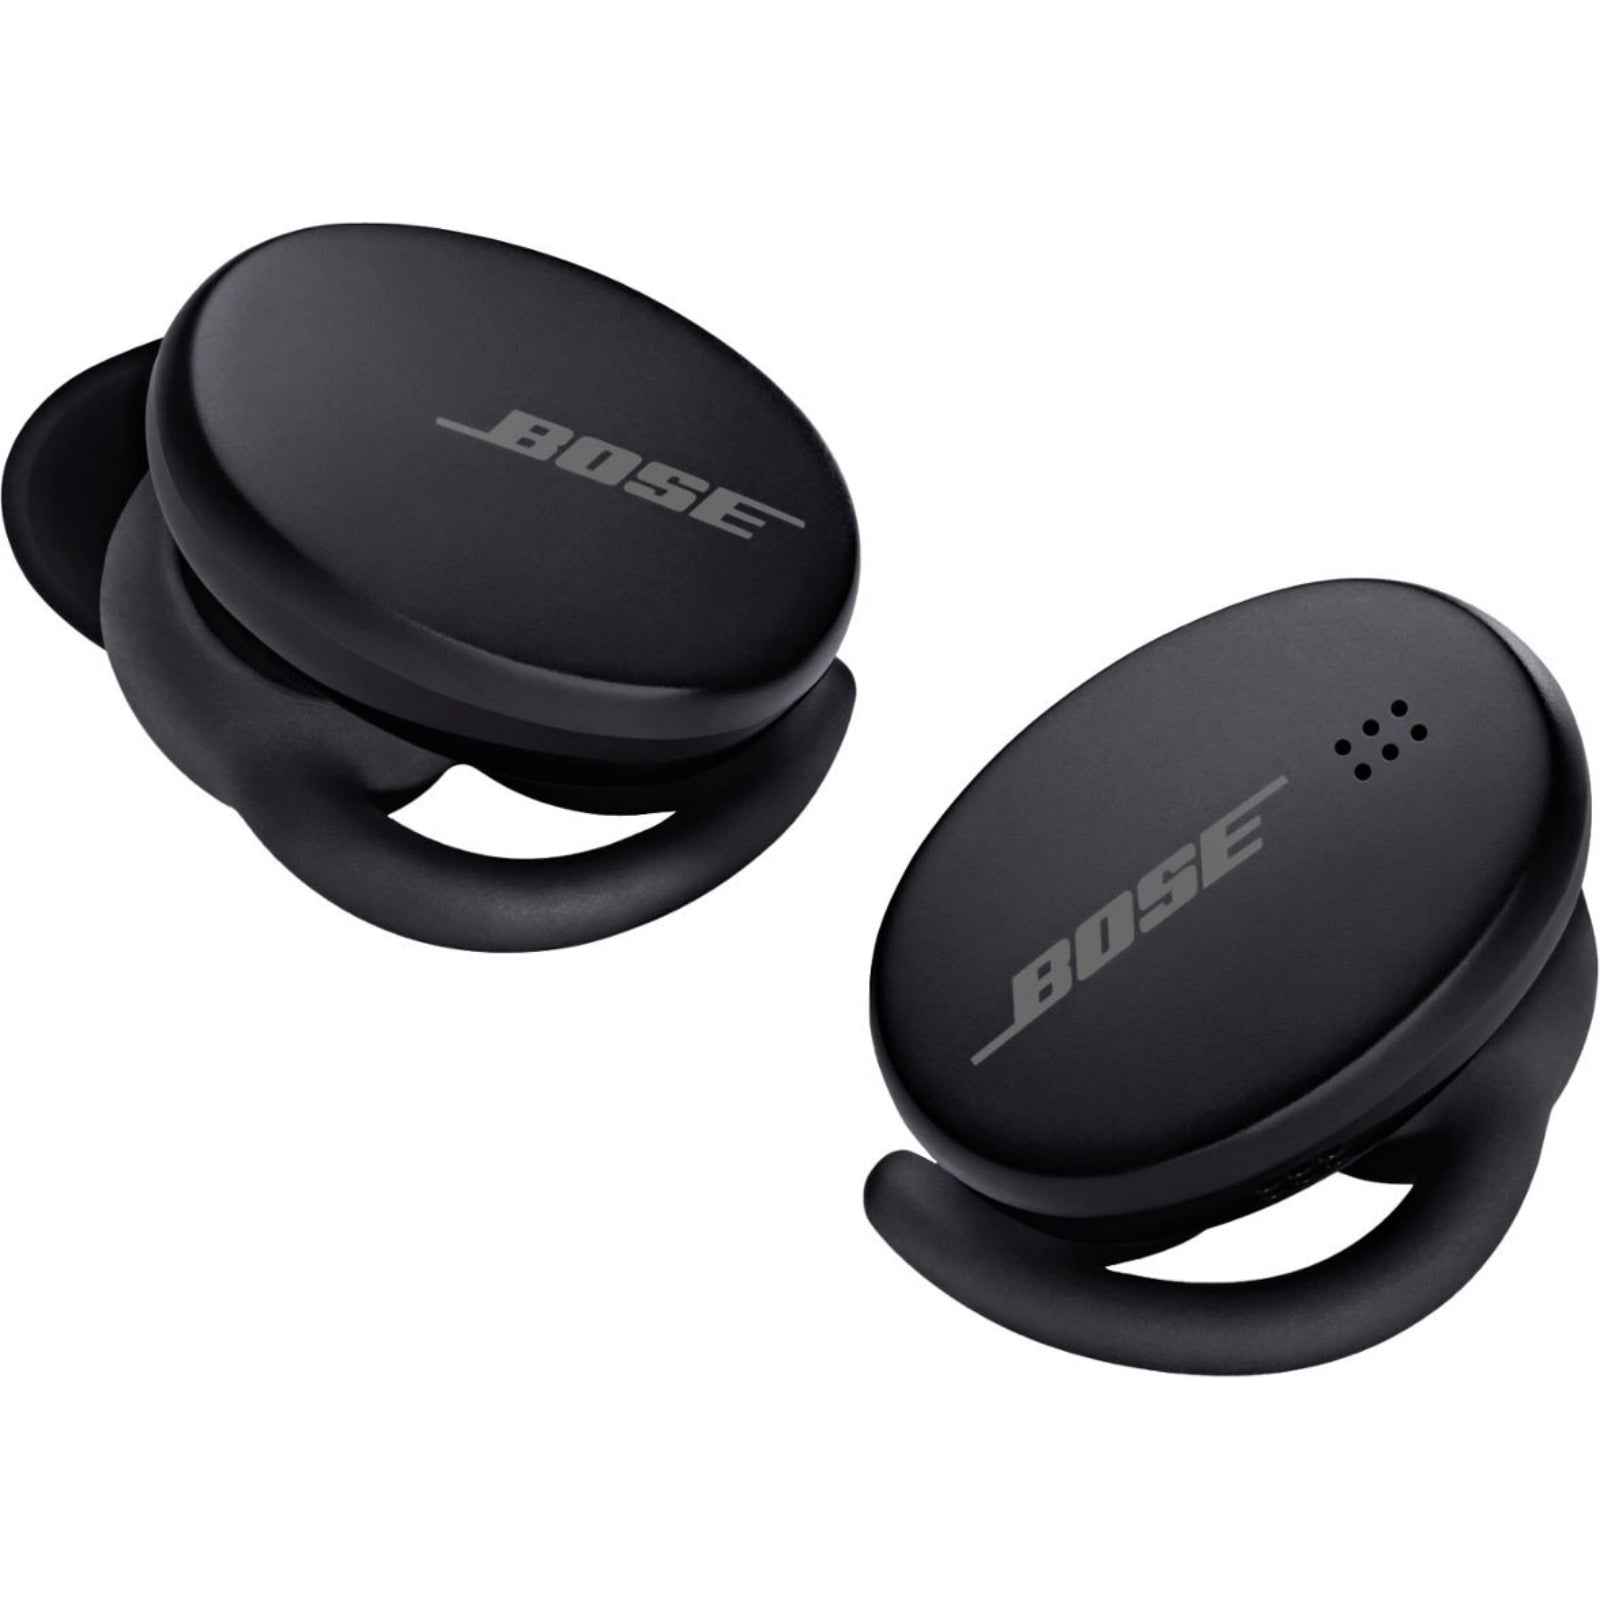 Bose Sport Wireless Earbuds Triple Black - MyMobile